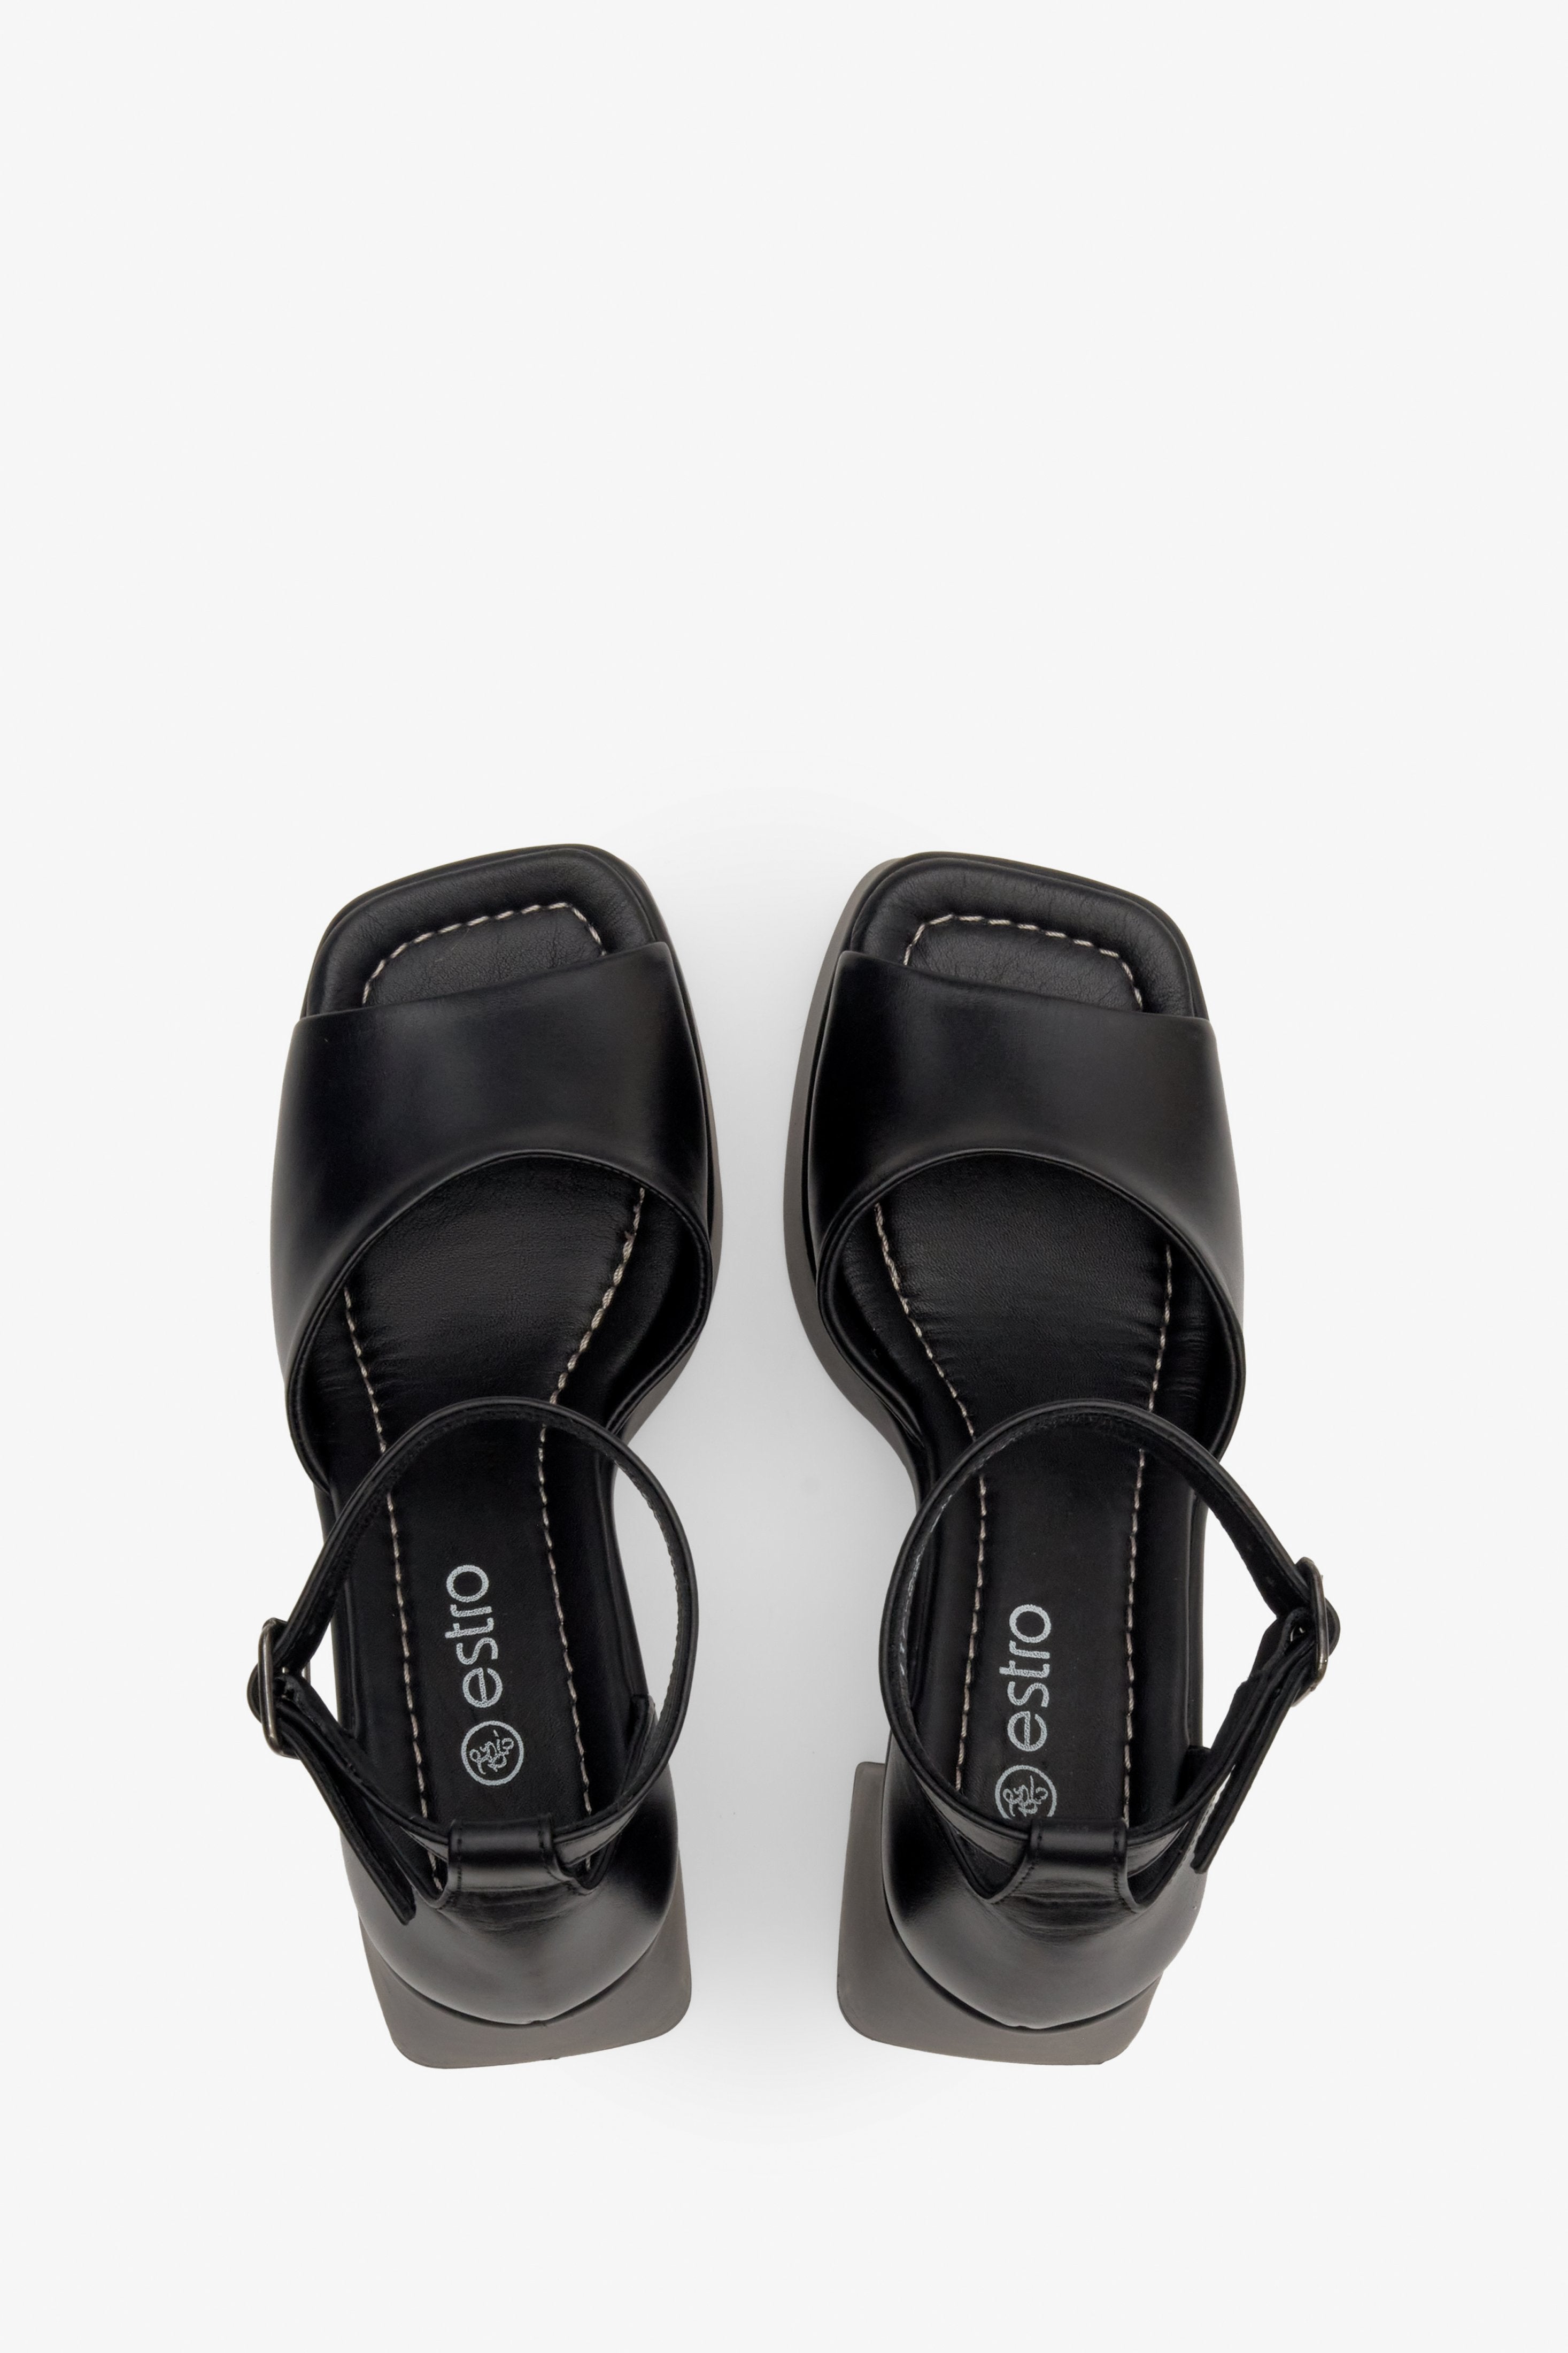 Sandały damskie skórzane na lato w kolorze czarnym Estro - prezentacja obuwia z góry.